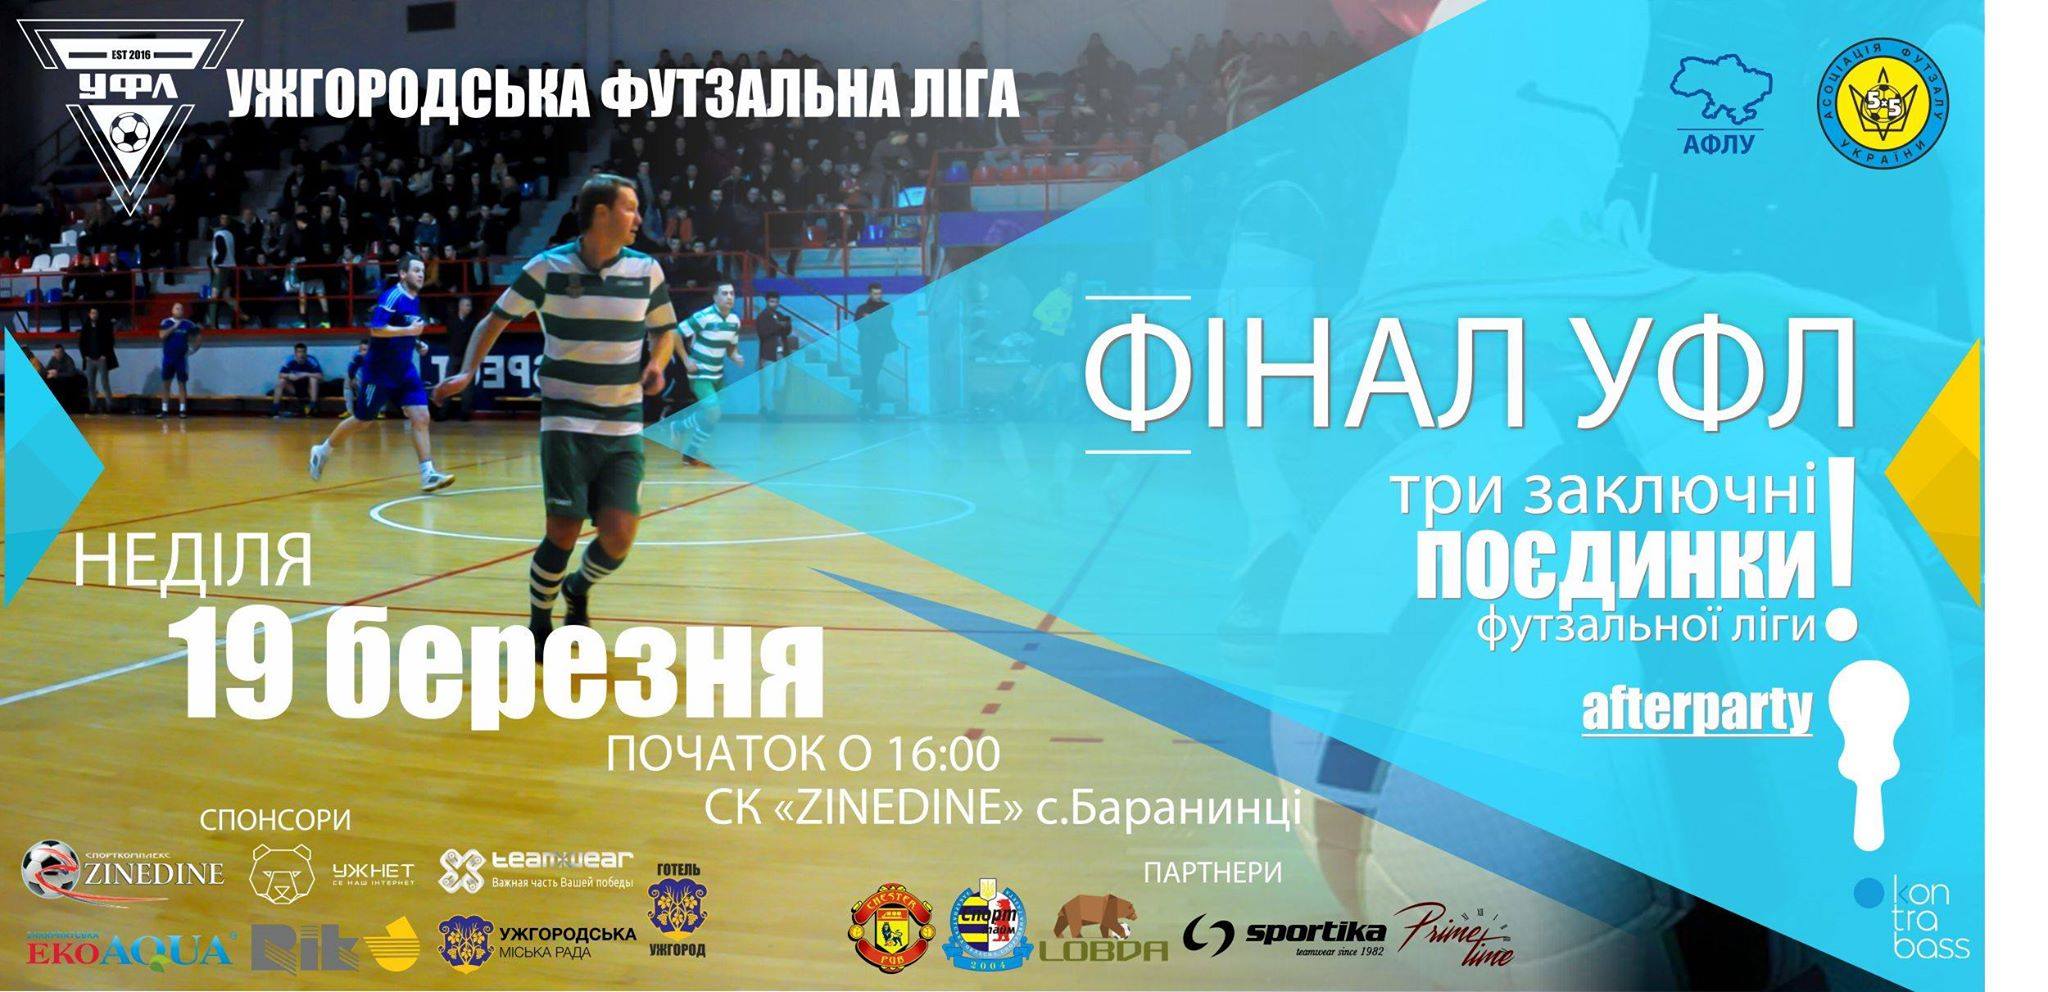 В воскресенье состоится финал Ужгородской Футзальной лиги / ВИДЕО